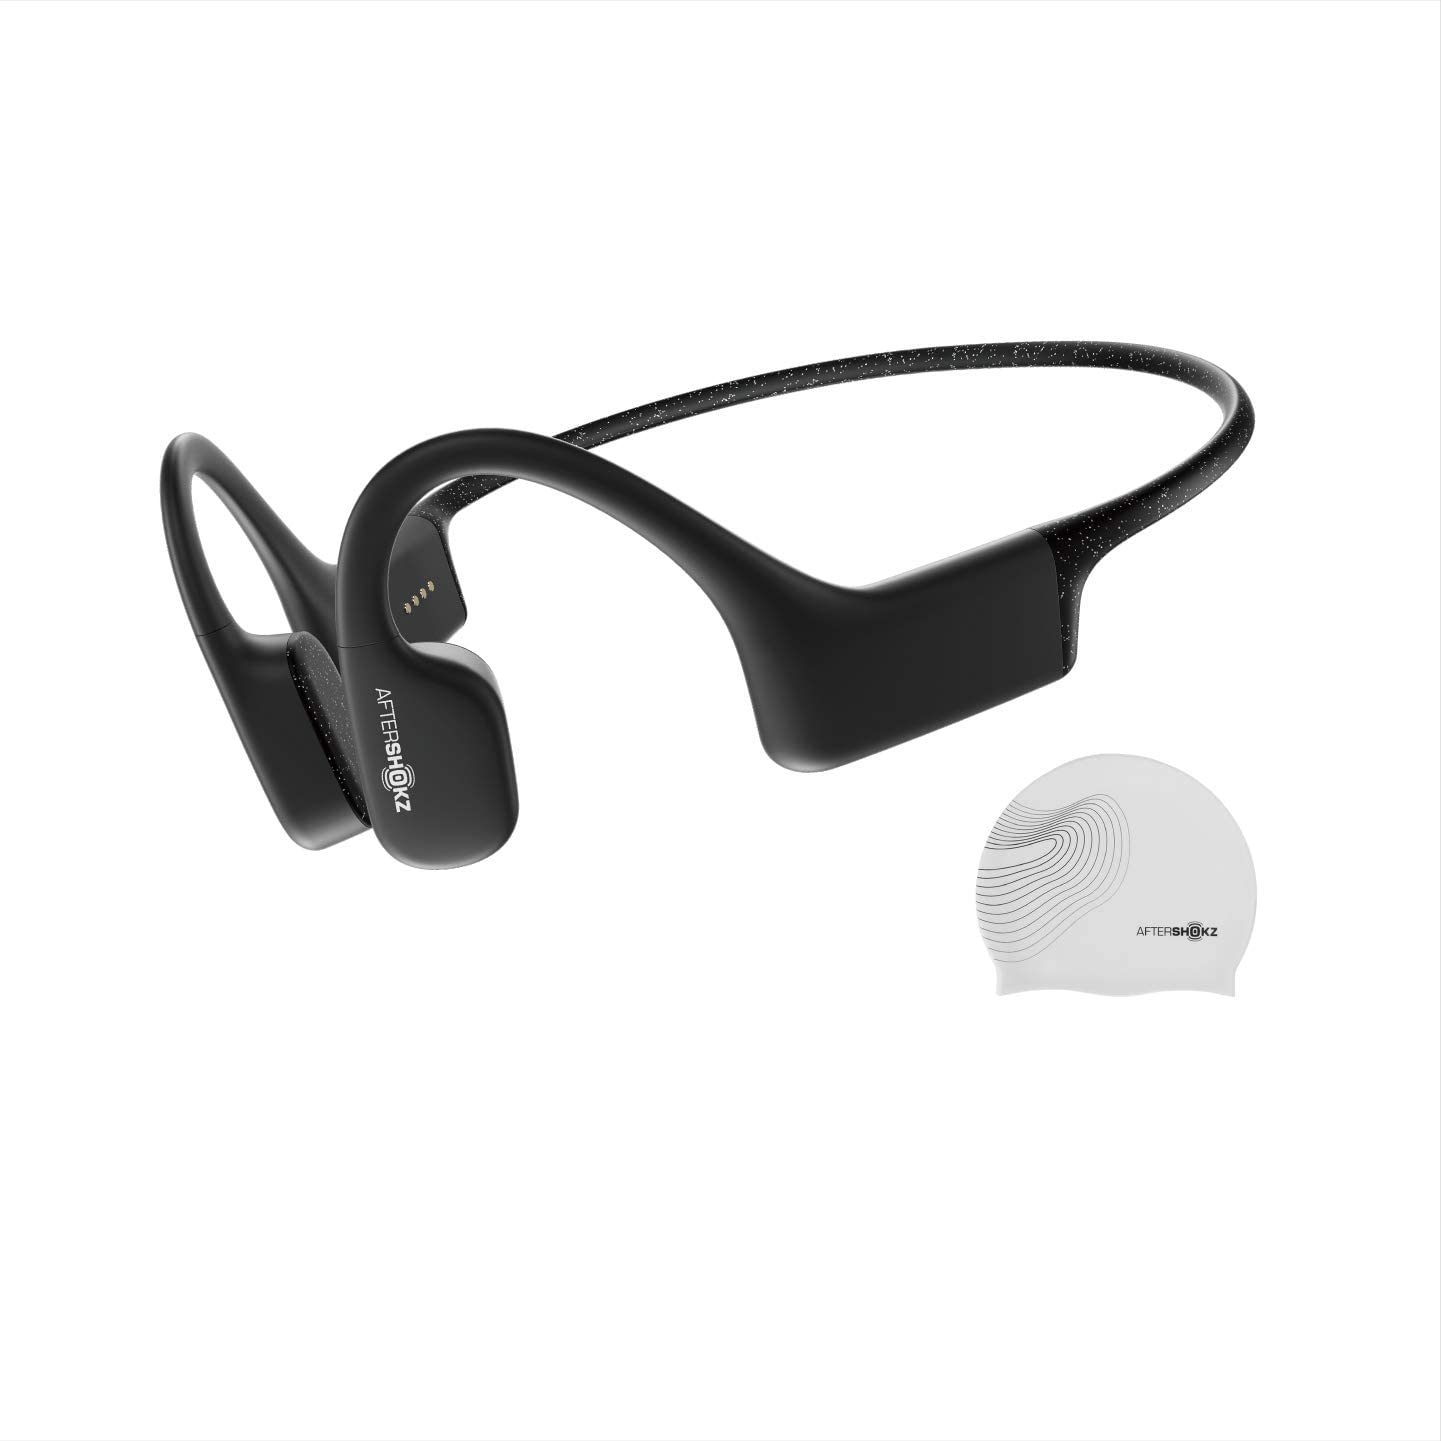 4 auriculares inalámbricos deportivos acuáticos para usar todos los días